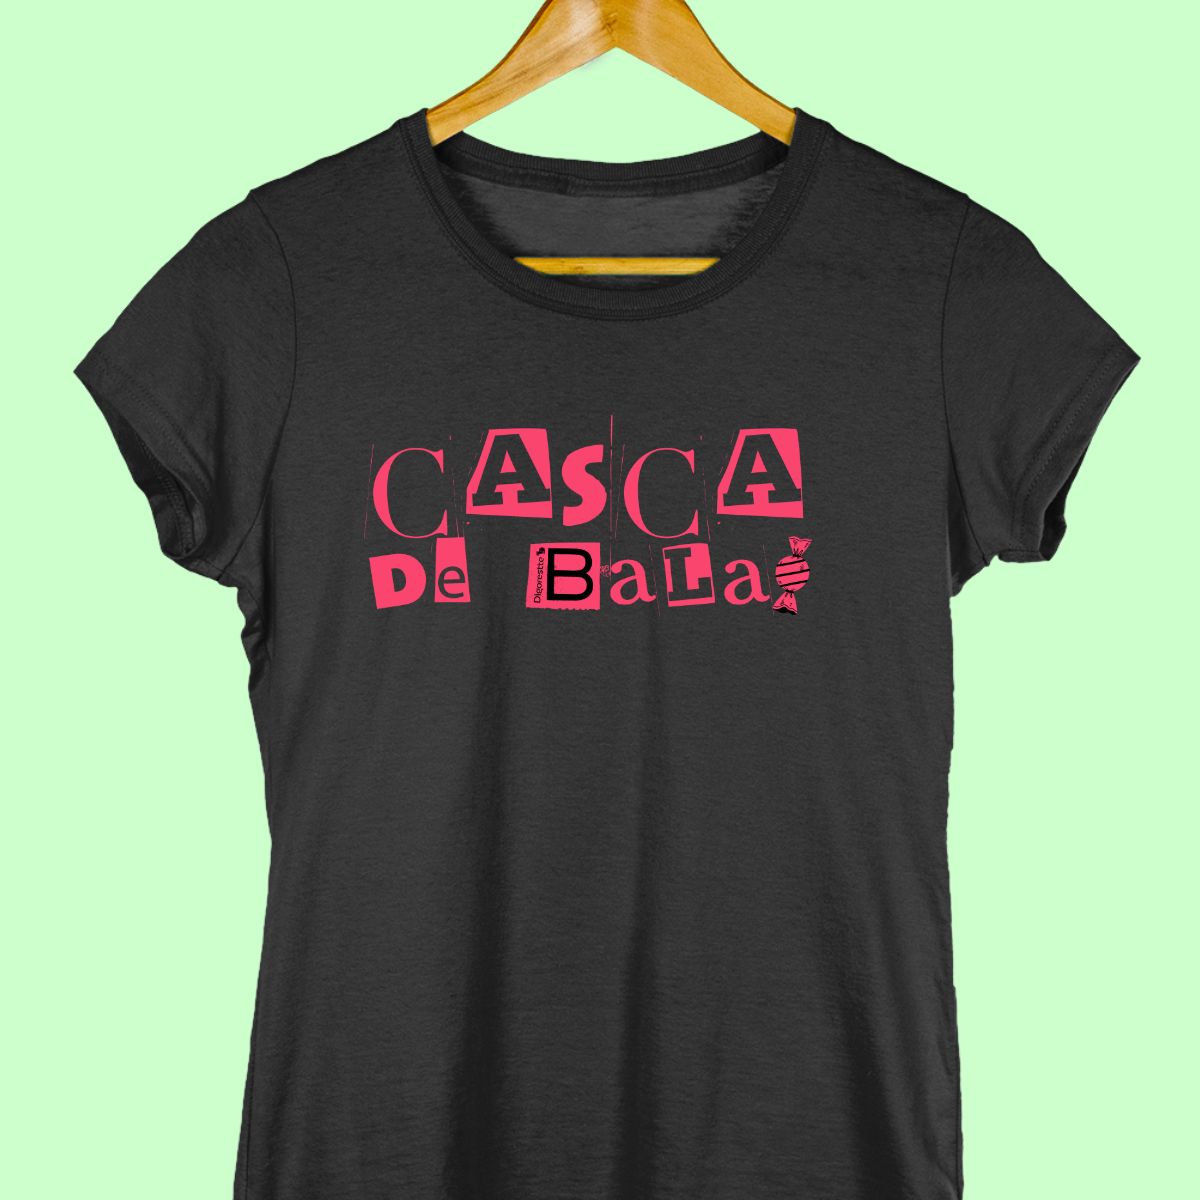 Camiseta feminina preta com a frase "Casca de bala".